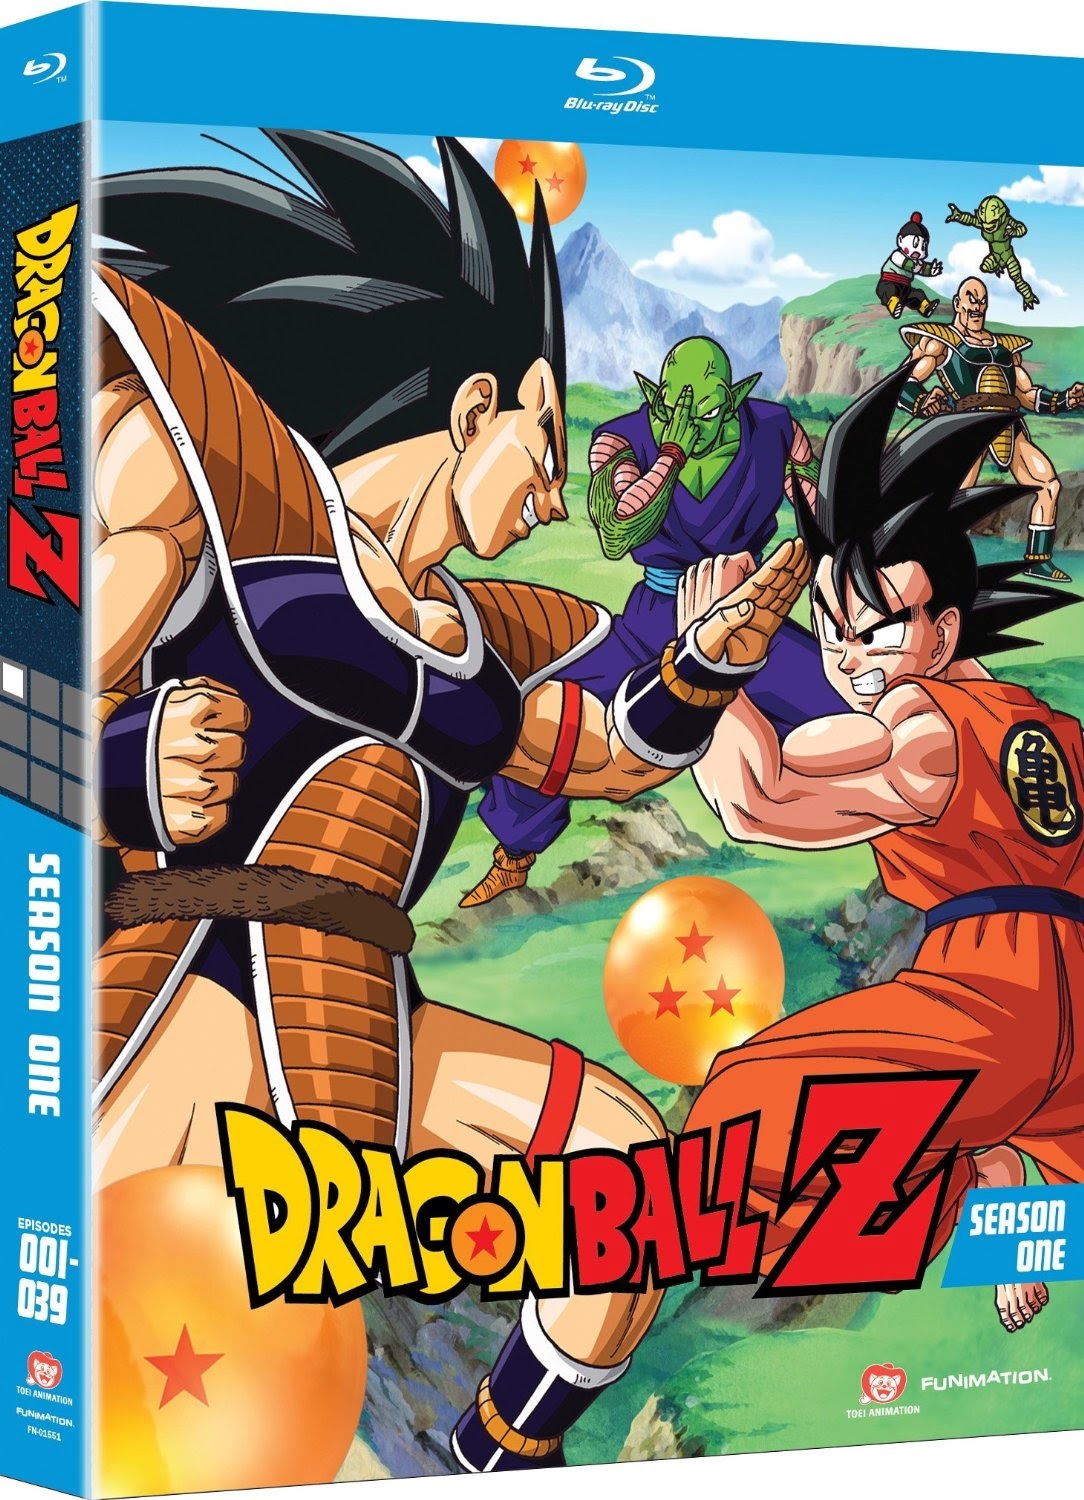 Anime - Juegos | Descargas Gratis: Dragon Ball Z | Season 1 | Bluray HD